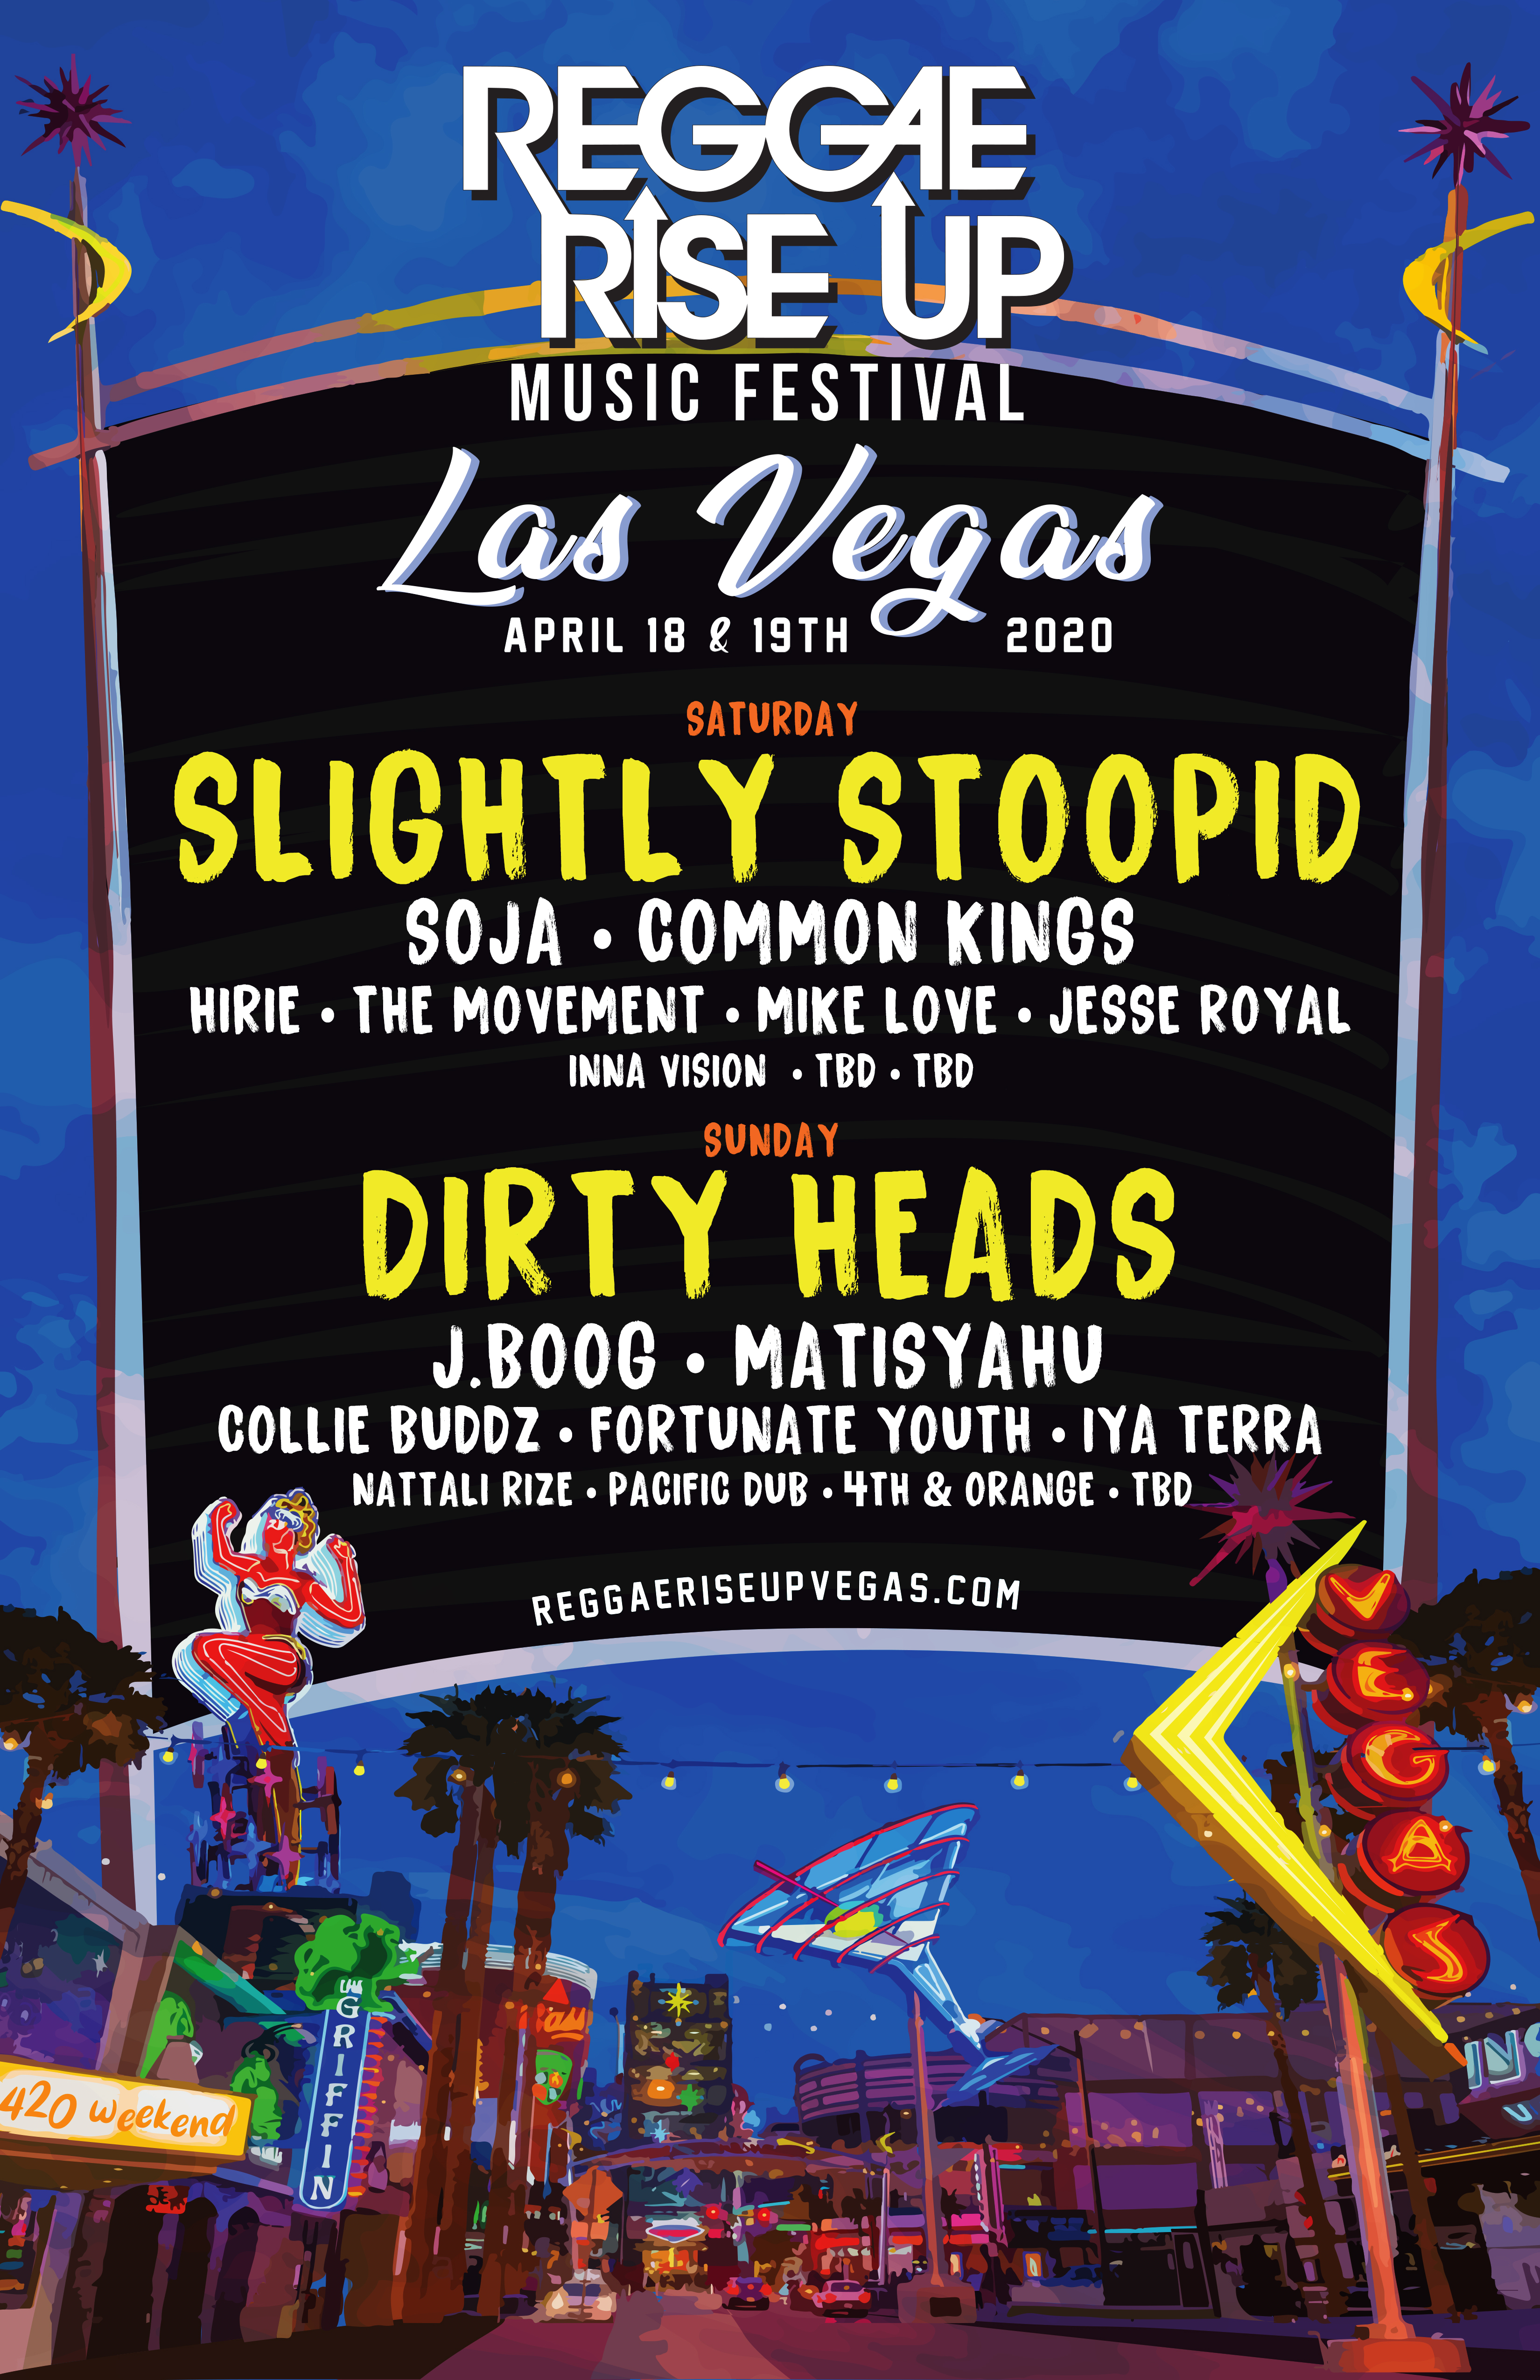 Reggae Rise Up Releases Full Artist Lineup for 2020 Vegas Festival